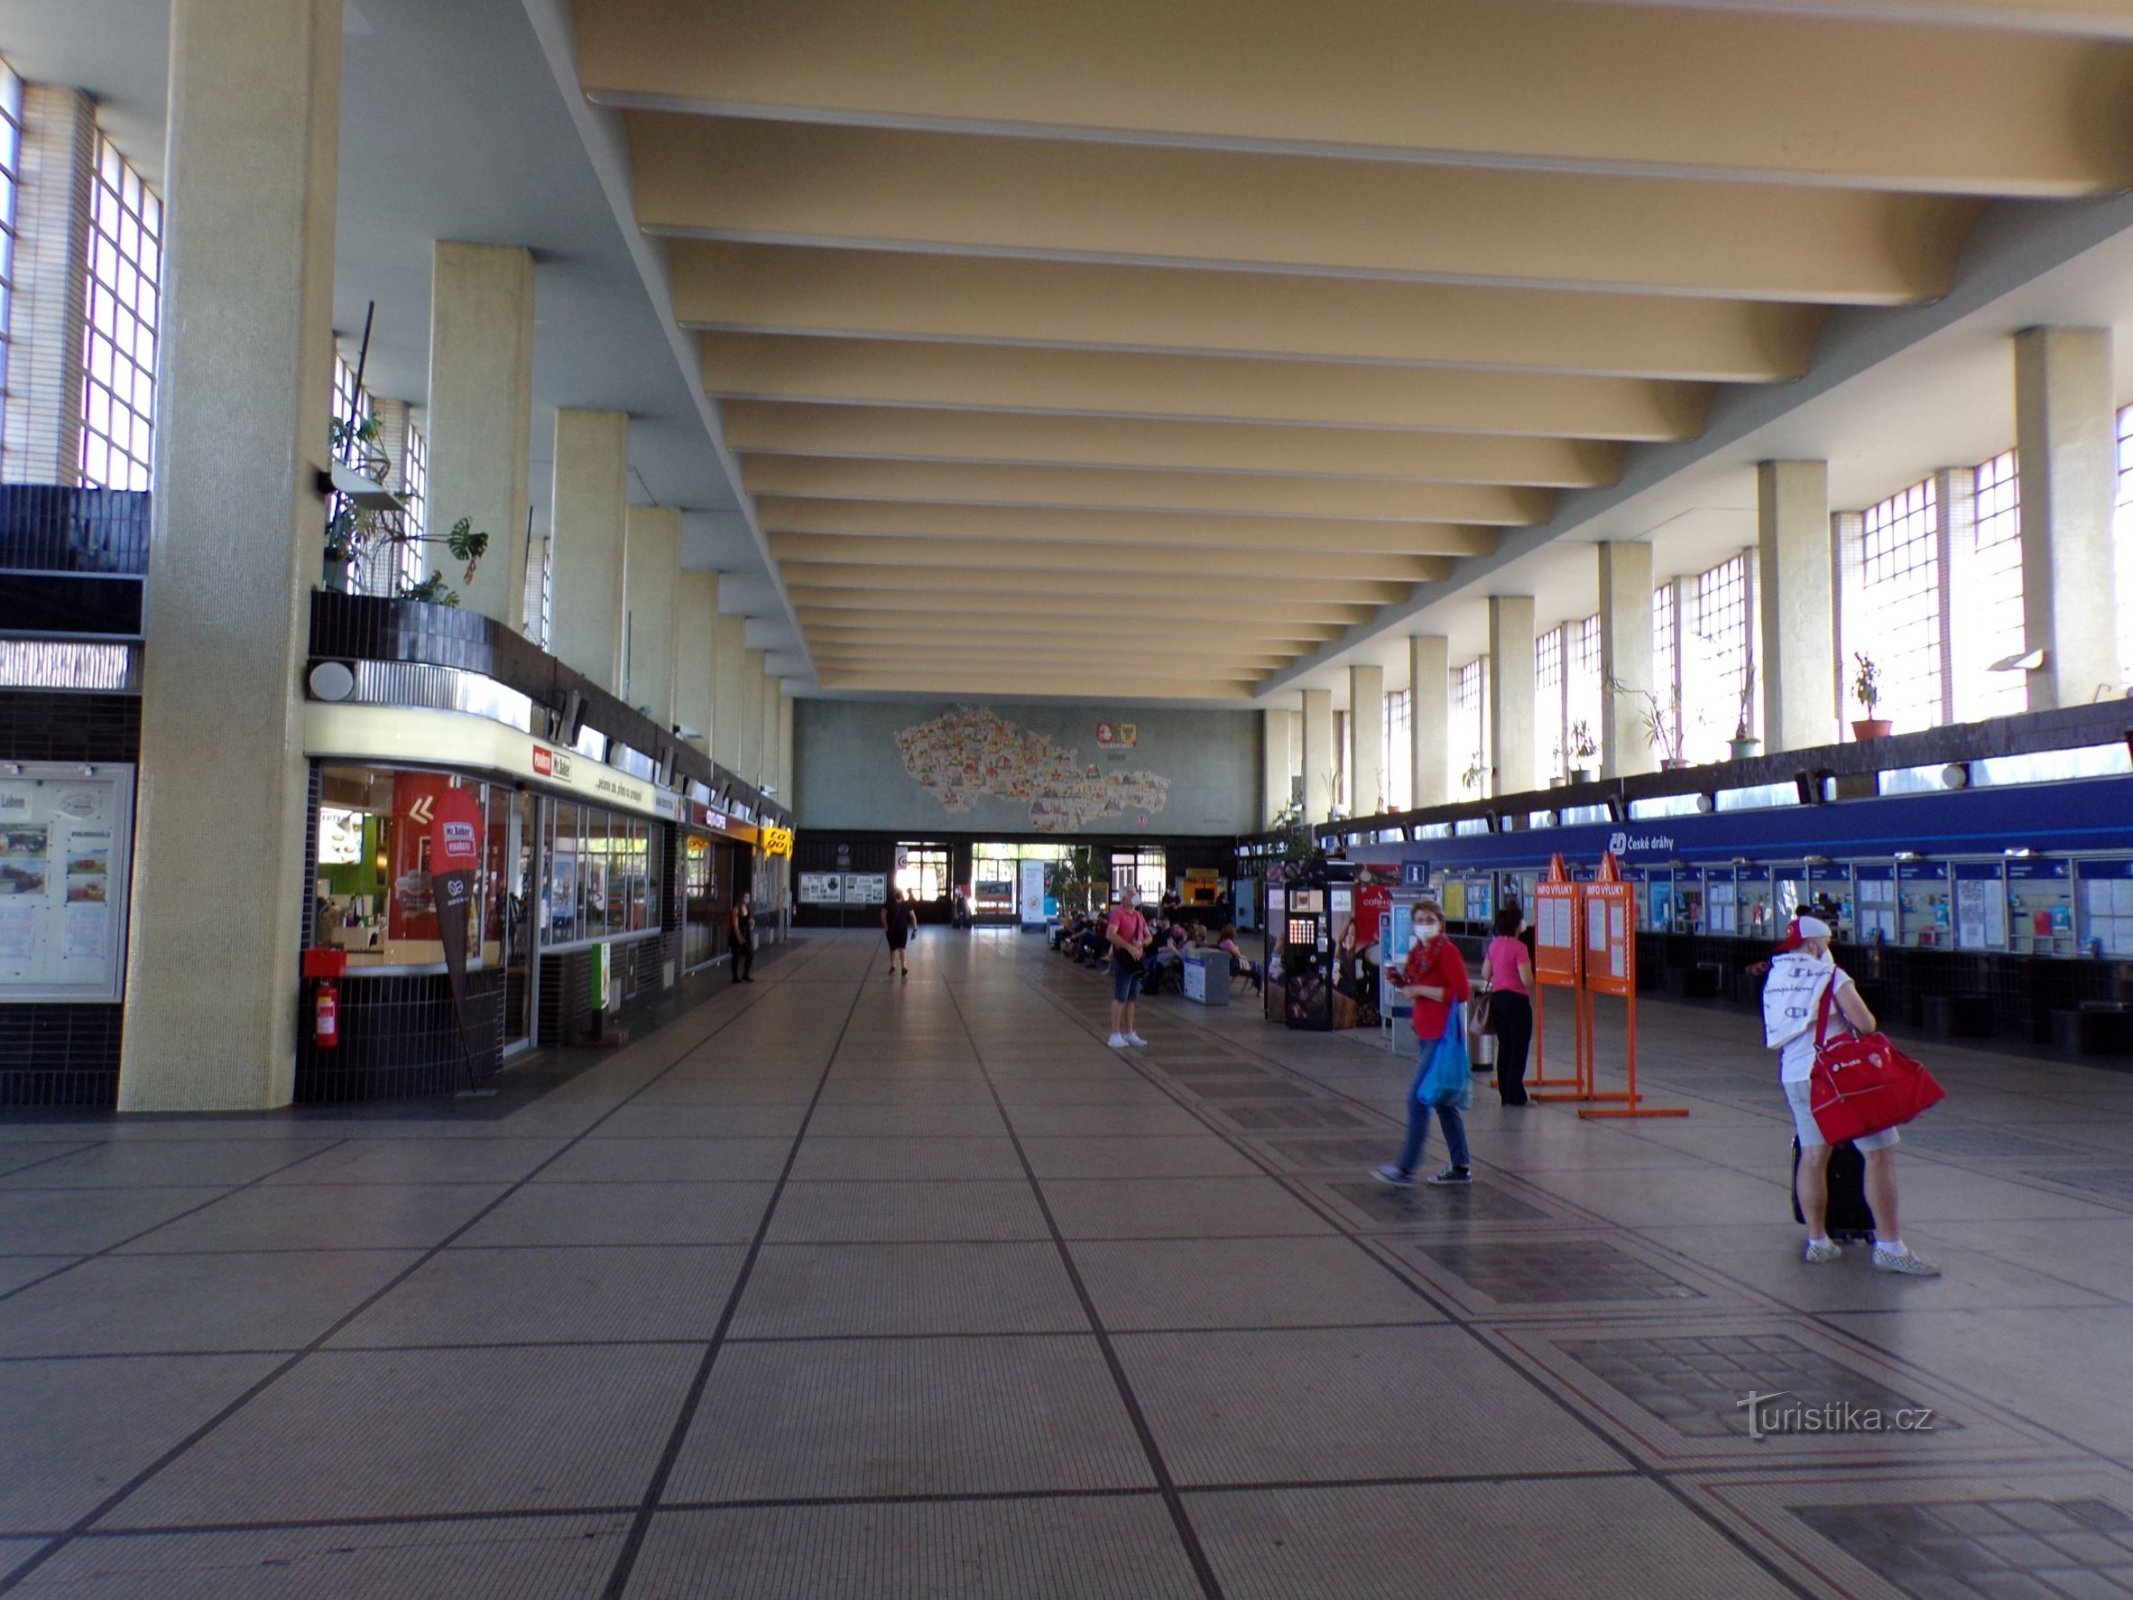 Main railway station (Pardubice, 10.5.2021/XNUMX/XNUMX)